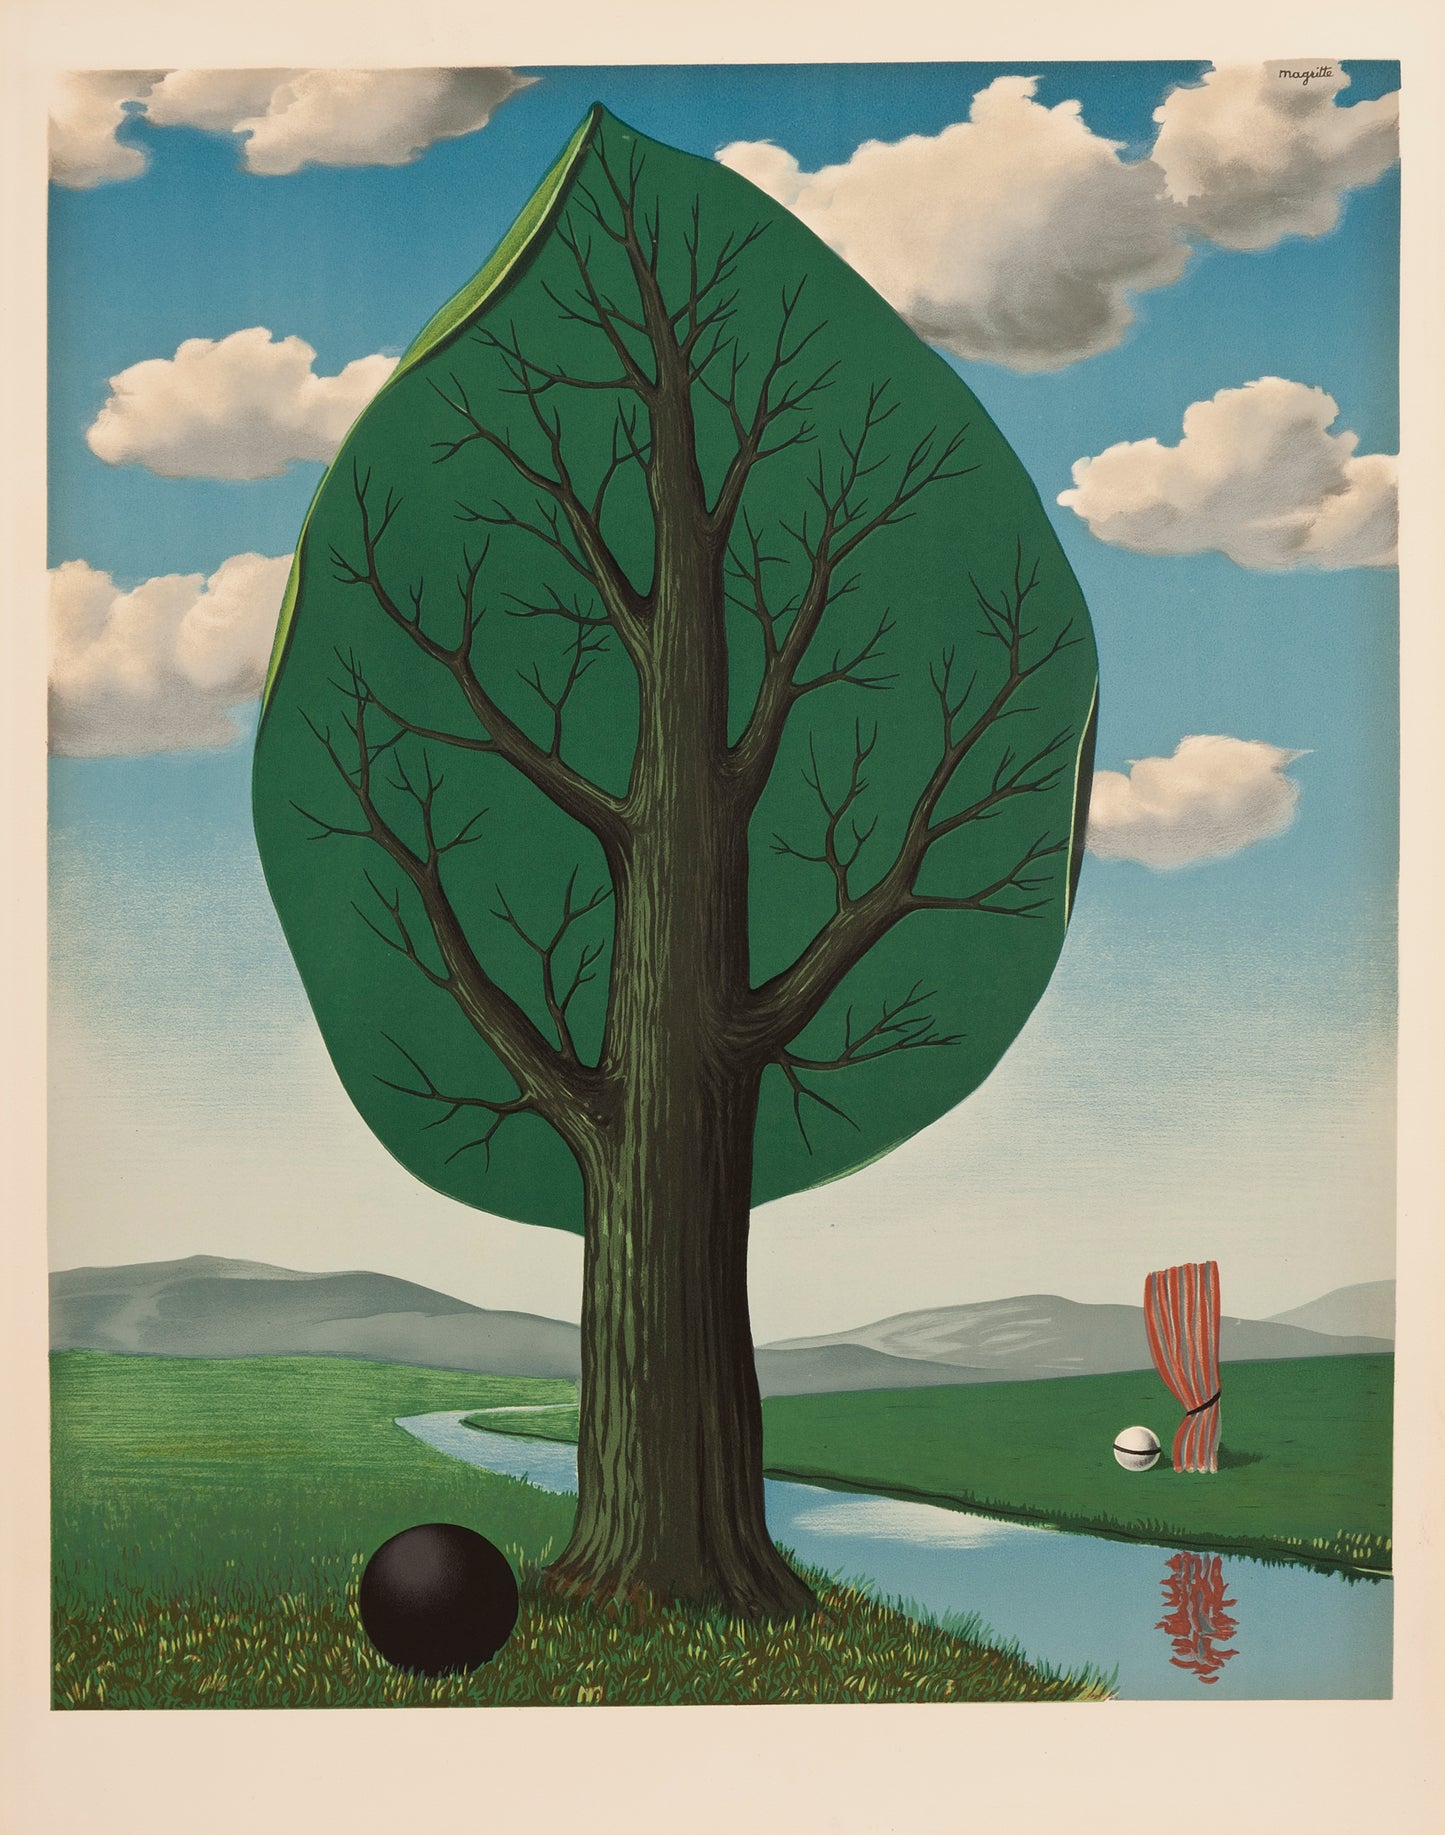 La Geante II by René Magritte - Mourlot Editions - Fine_Art - Poster - Lithograph - Wall Art - Vintage - Prints - Original